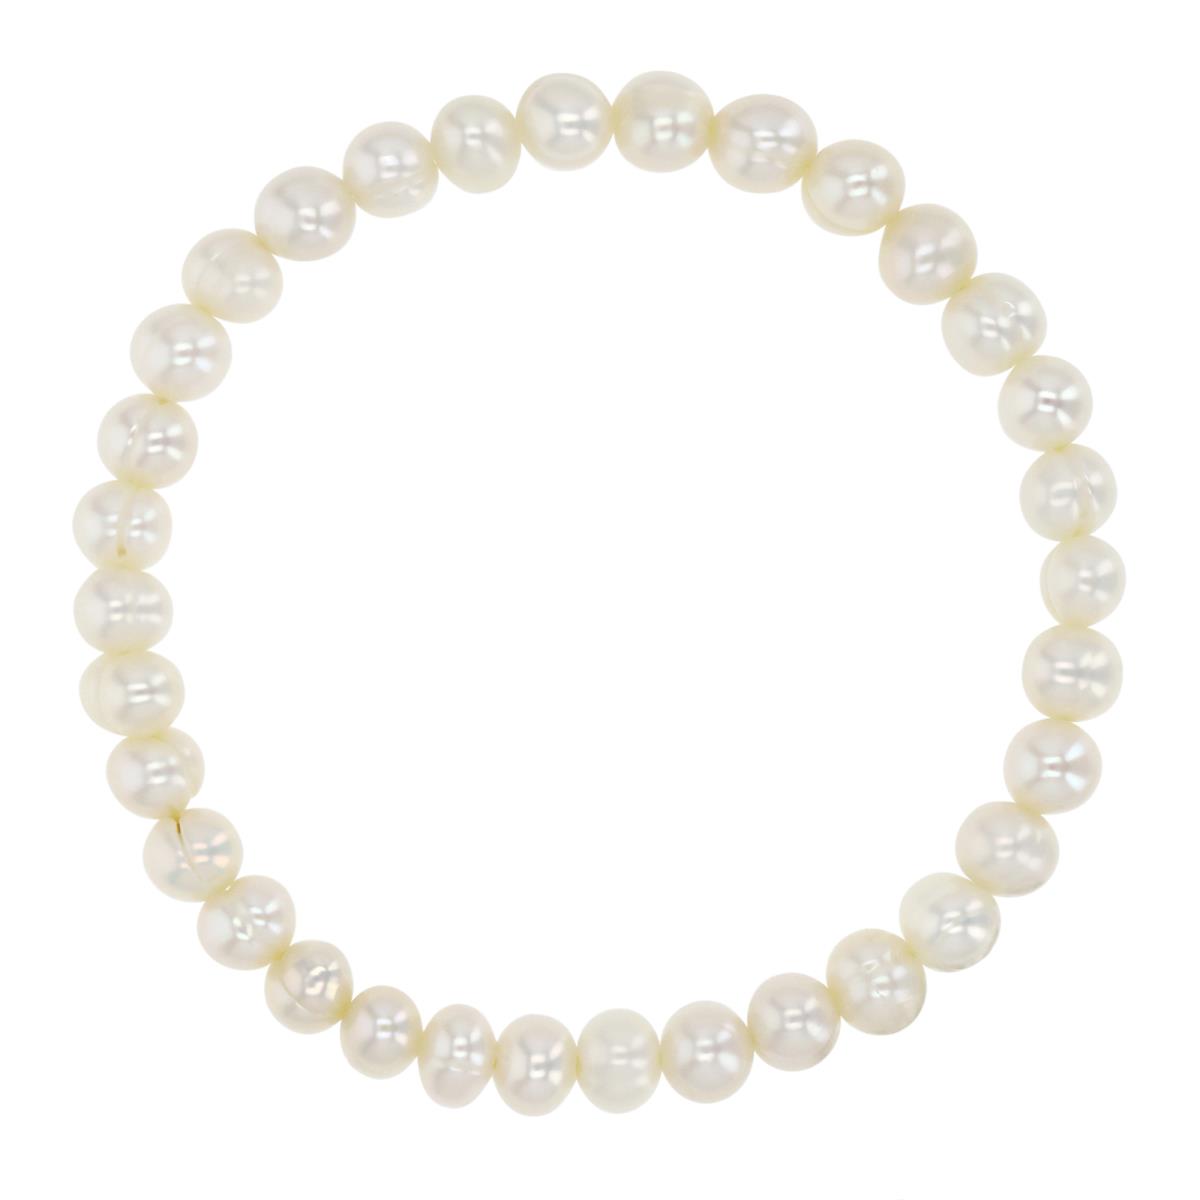 Elastic Band 6MM Polished White Freshwater Pearl 7.5" Bracelet